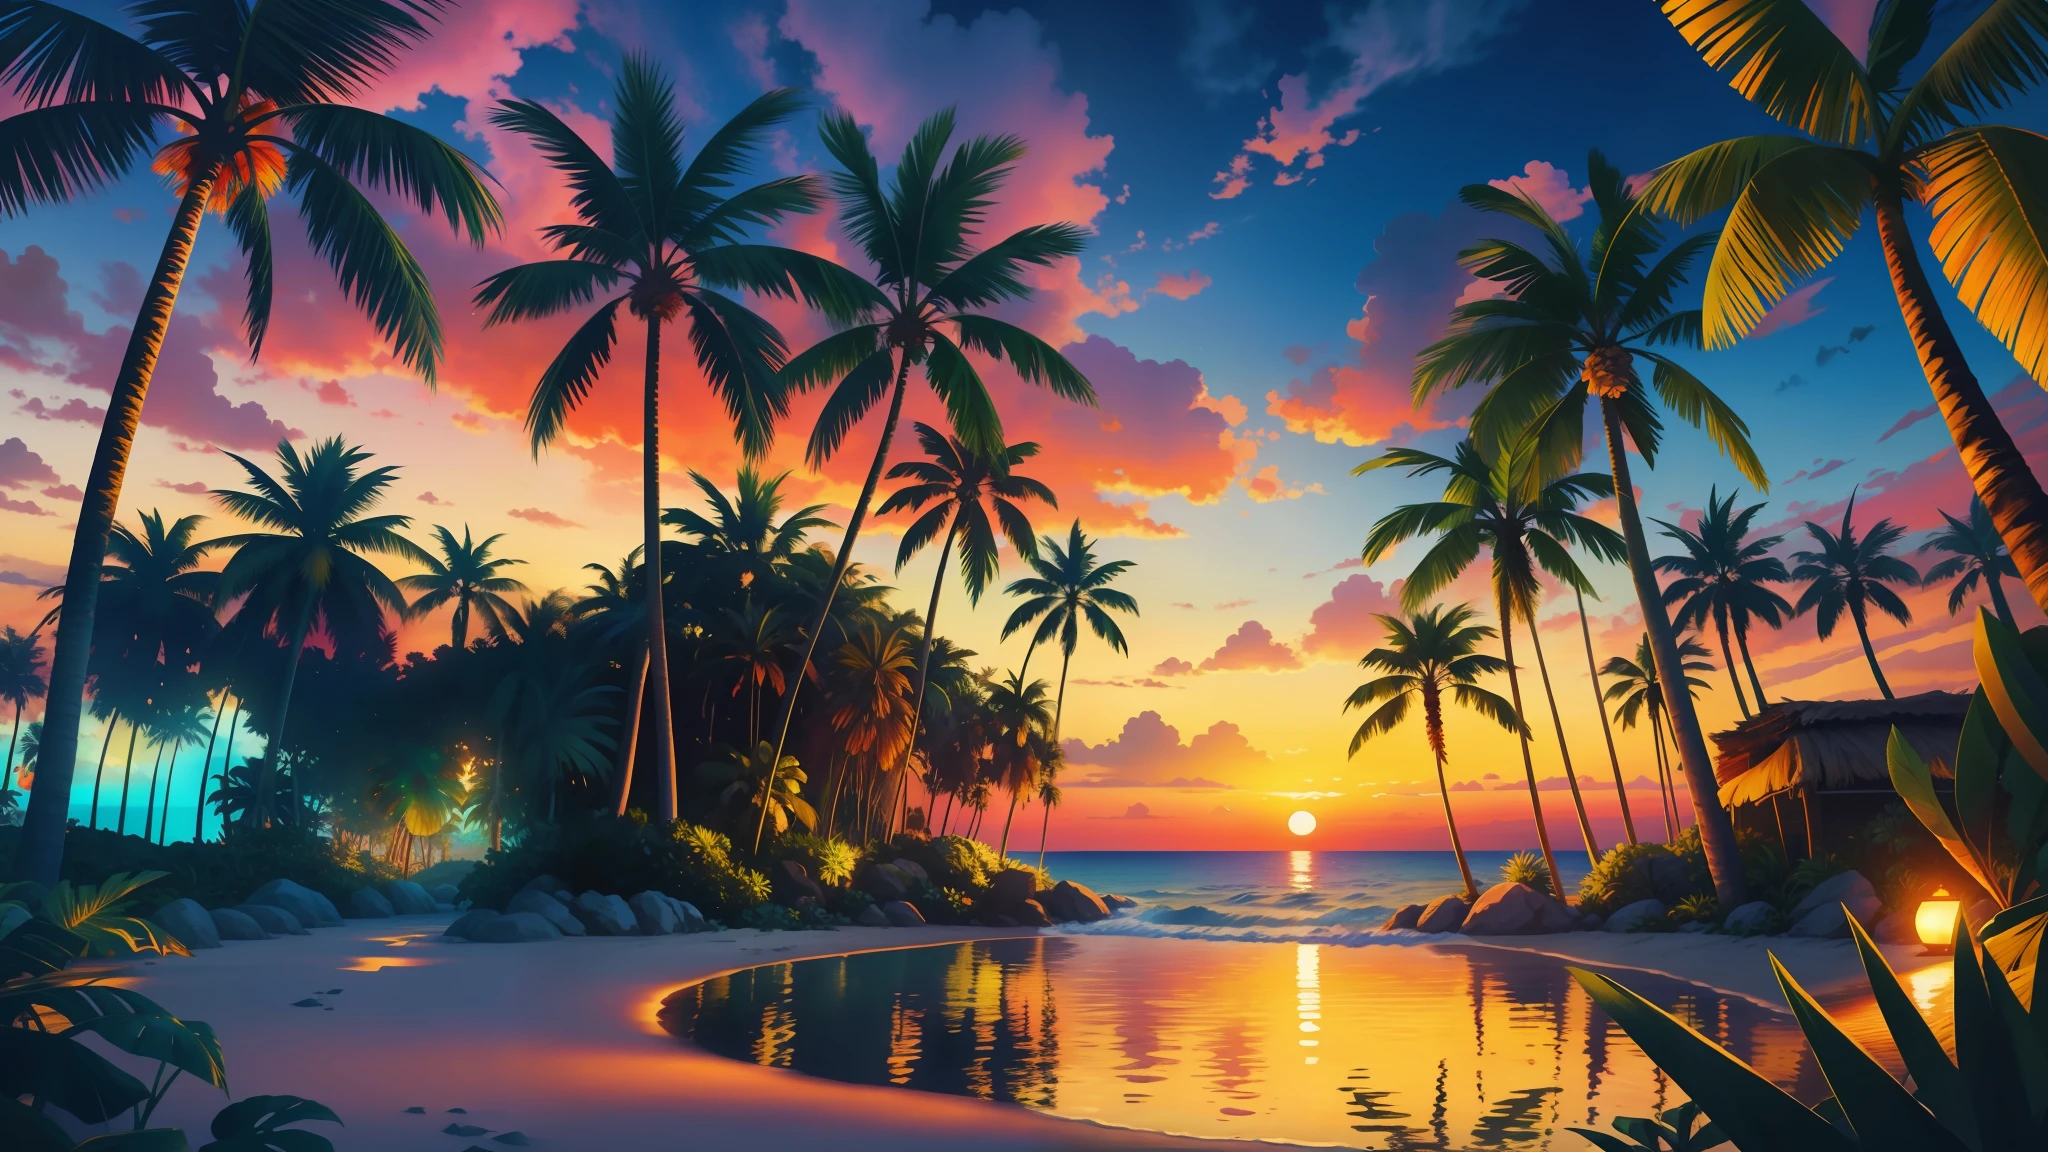 杰作, 最好的质量, 阳光 beach, 起伏的棕榈树和充满活力的热带景观, 真实感, 摄影, 阳光, 暮, 热带丛林, 高分辨率, 花, 电影灯光